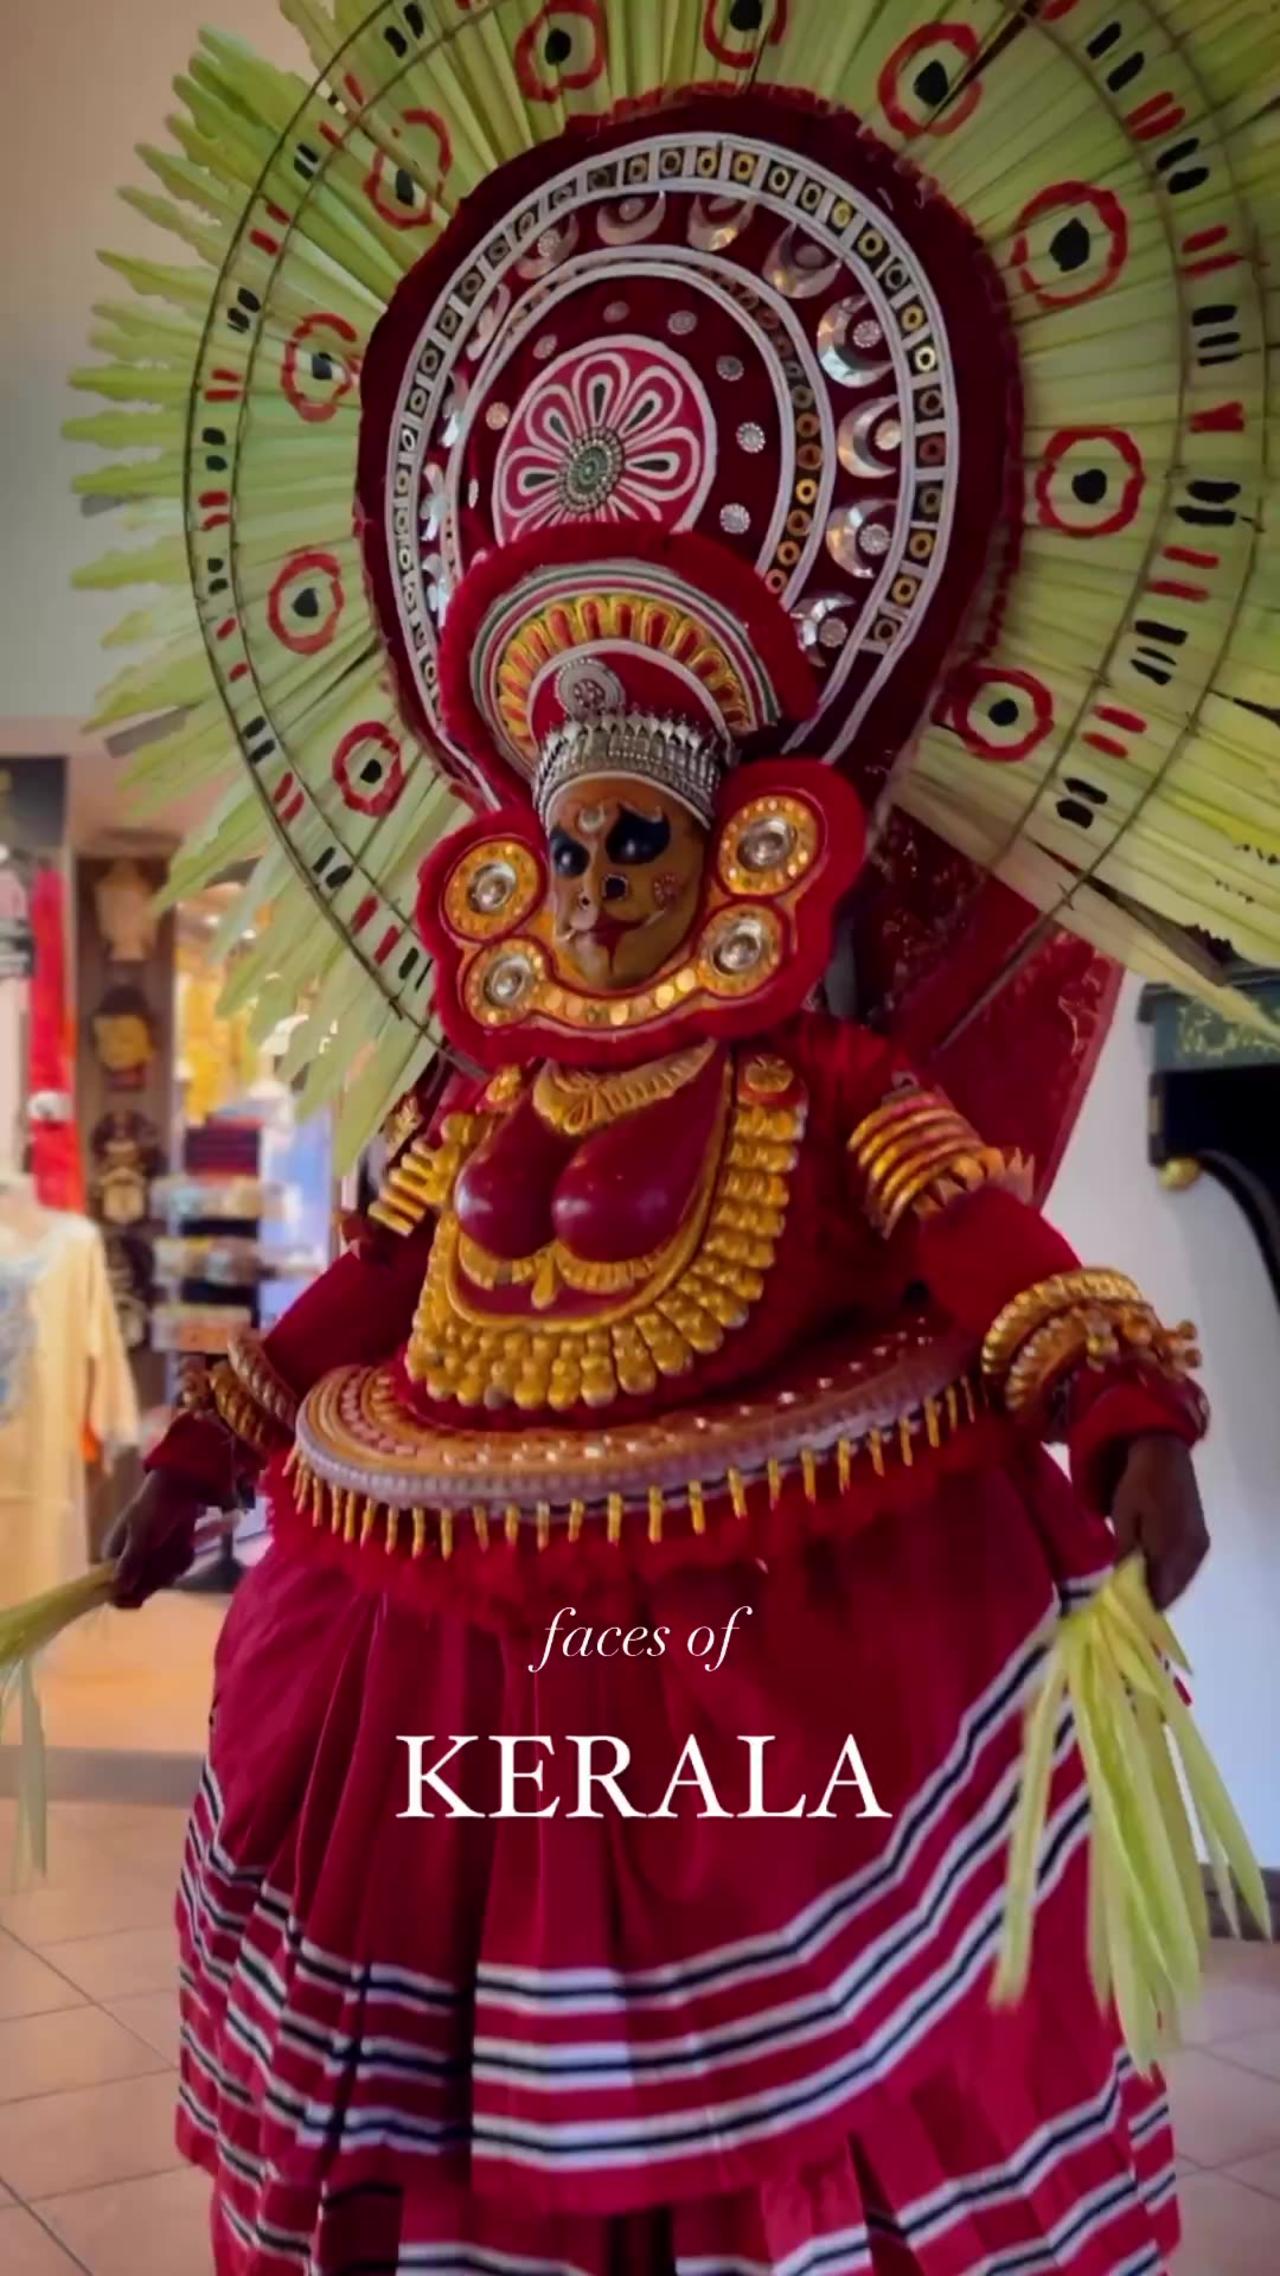 Face of Kerala